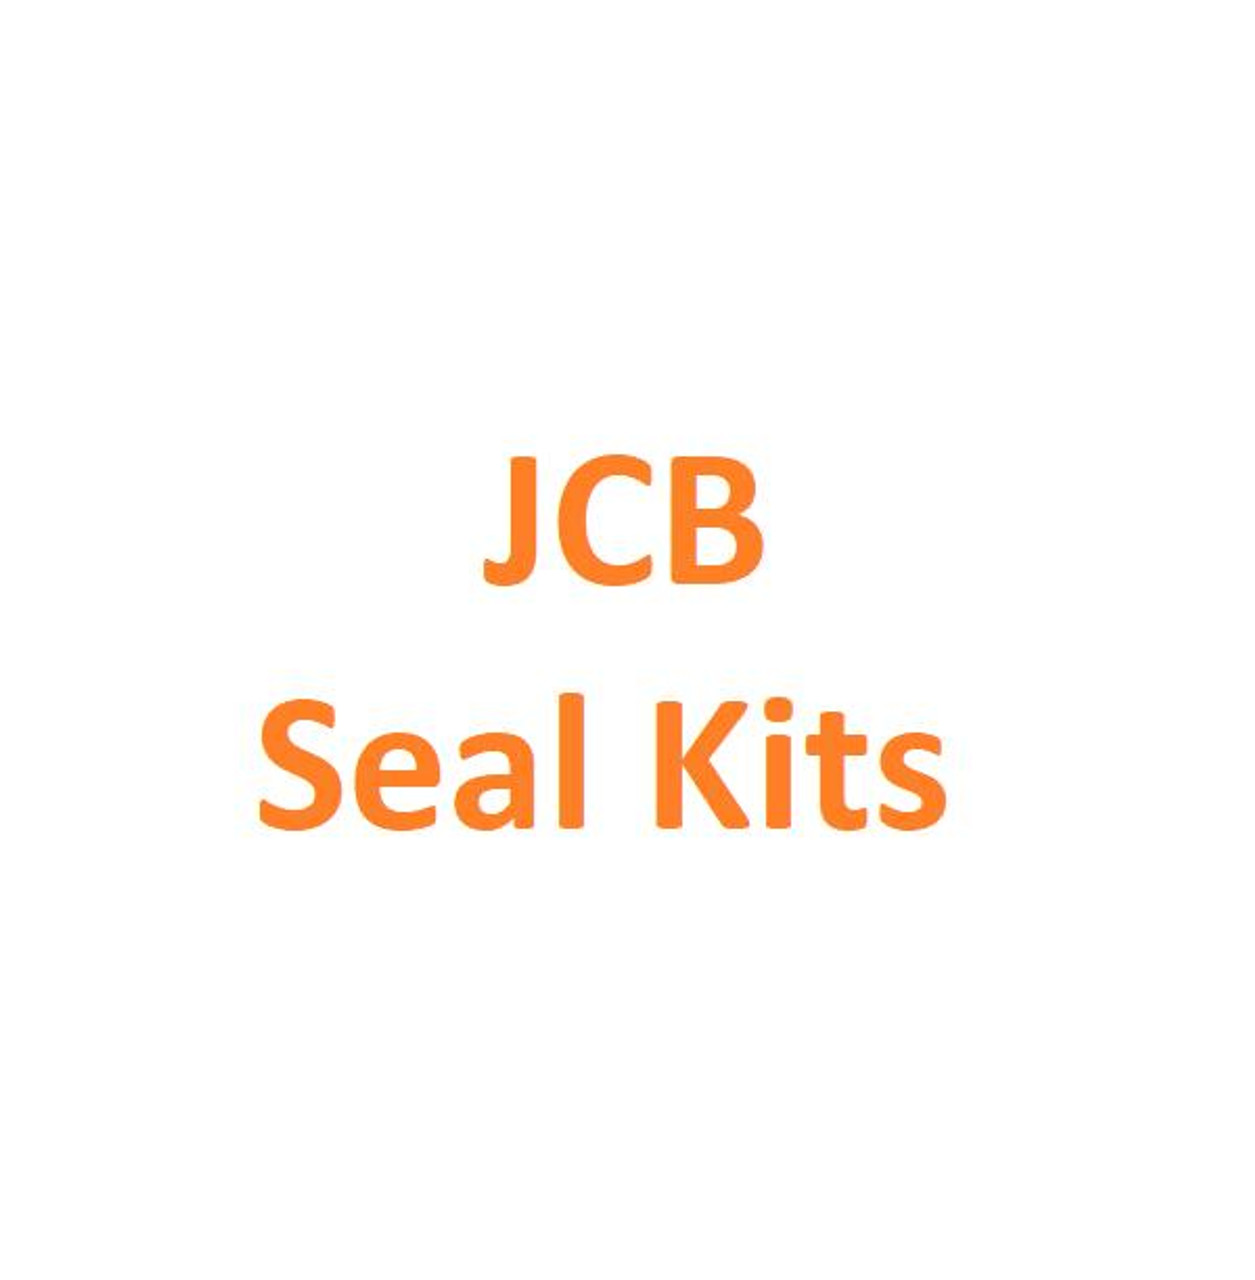 991-00165 Blade Cylinder Seal Kit fits JCB 804 Super